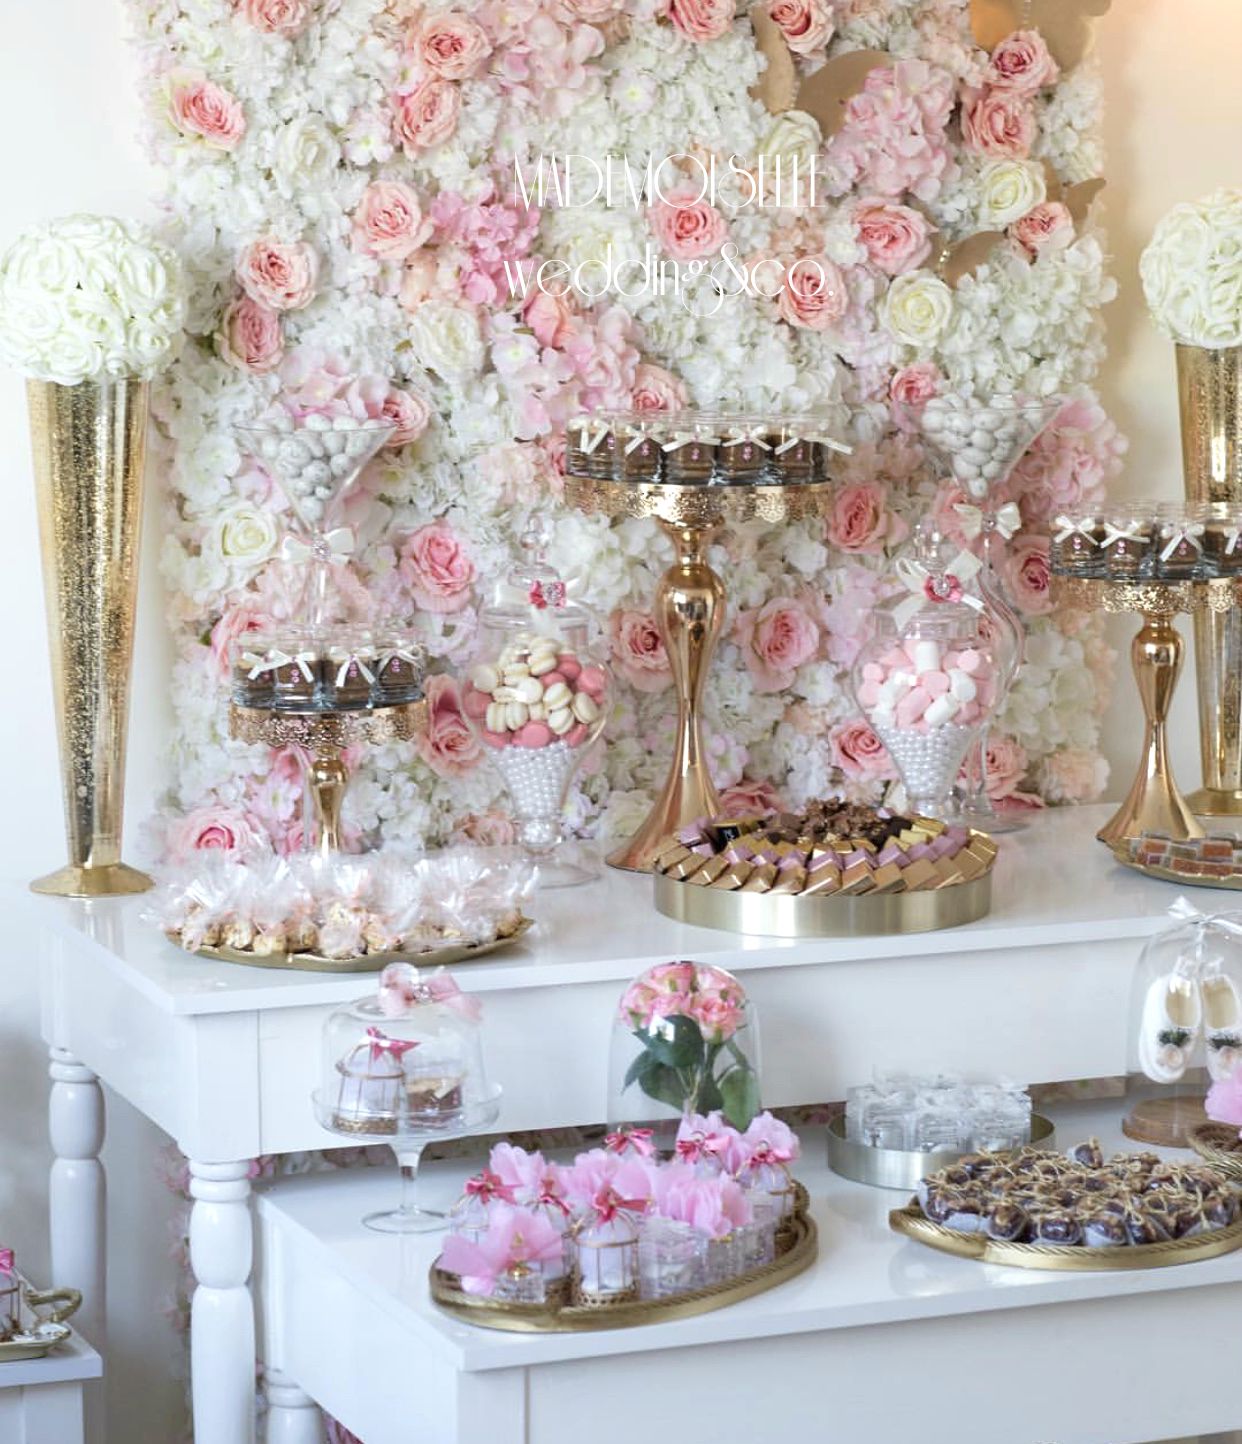 IMG_E4501-slatki sto-dekoracija slatkog stola-cvetni zid-cupecakes-kolacici za slatki sto-dekoracija rodjendana-dekoracija vencanja